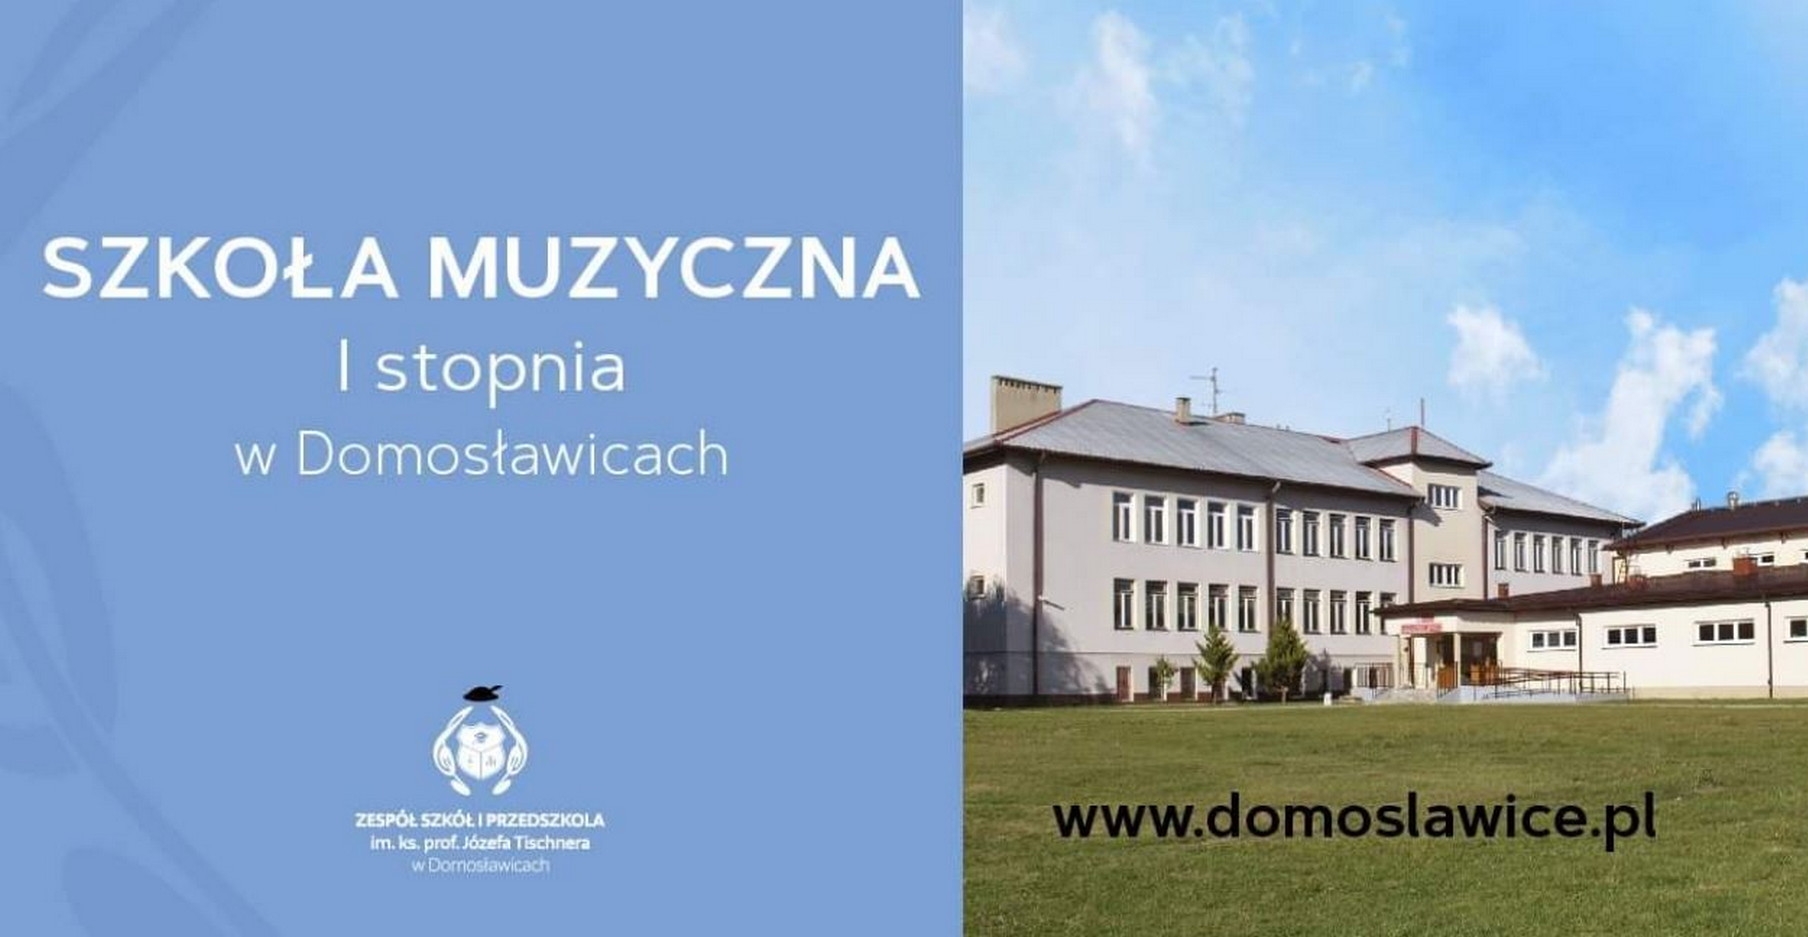 Nagroda Związku Kompozytorów Polskich dla Szkoły w Domosławicach